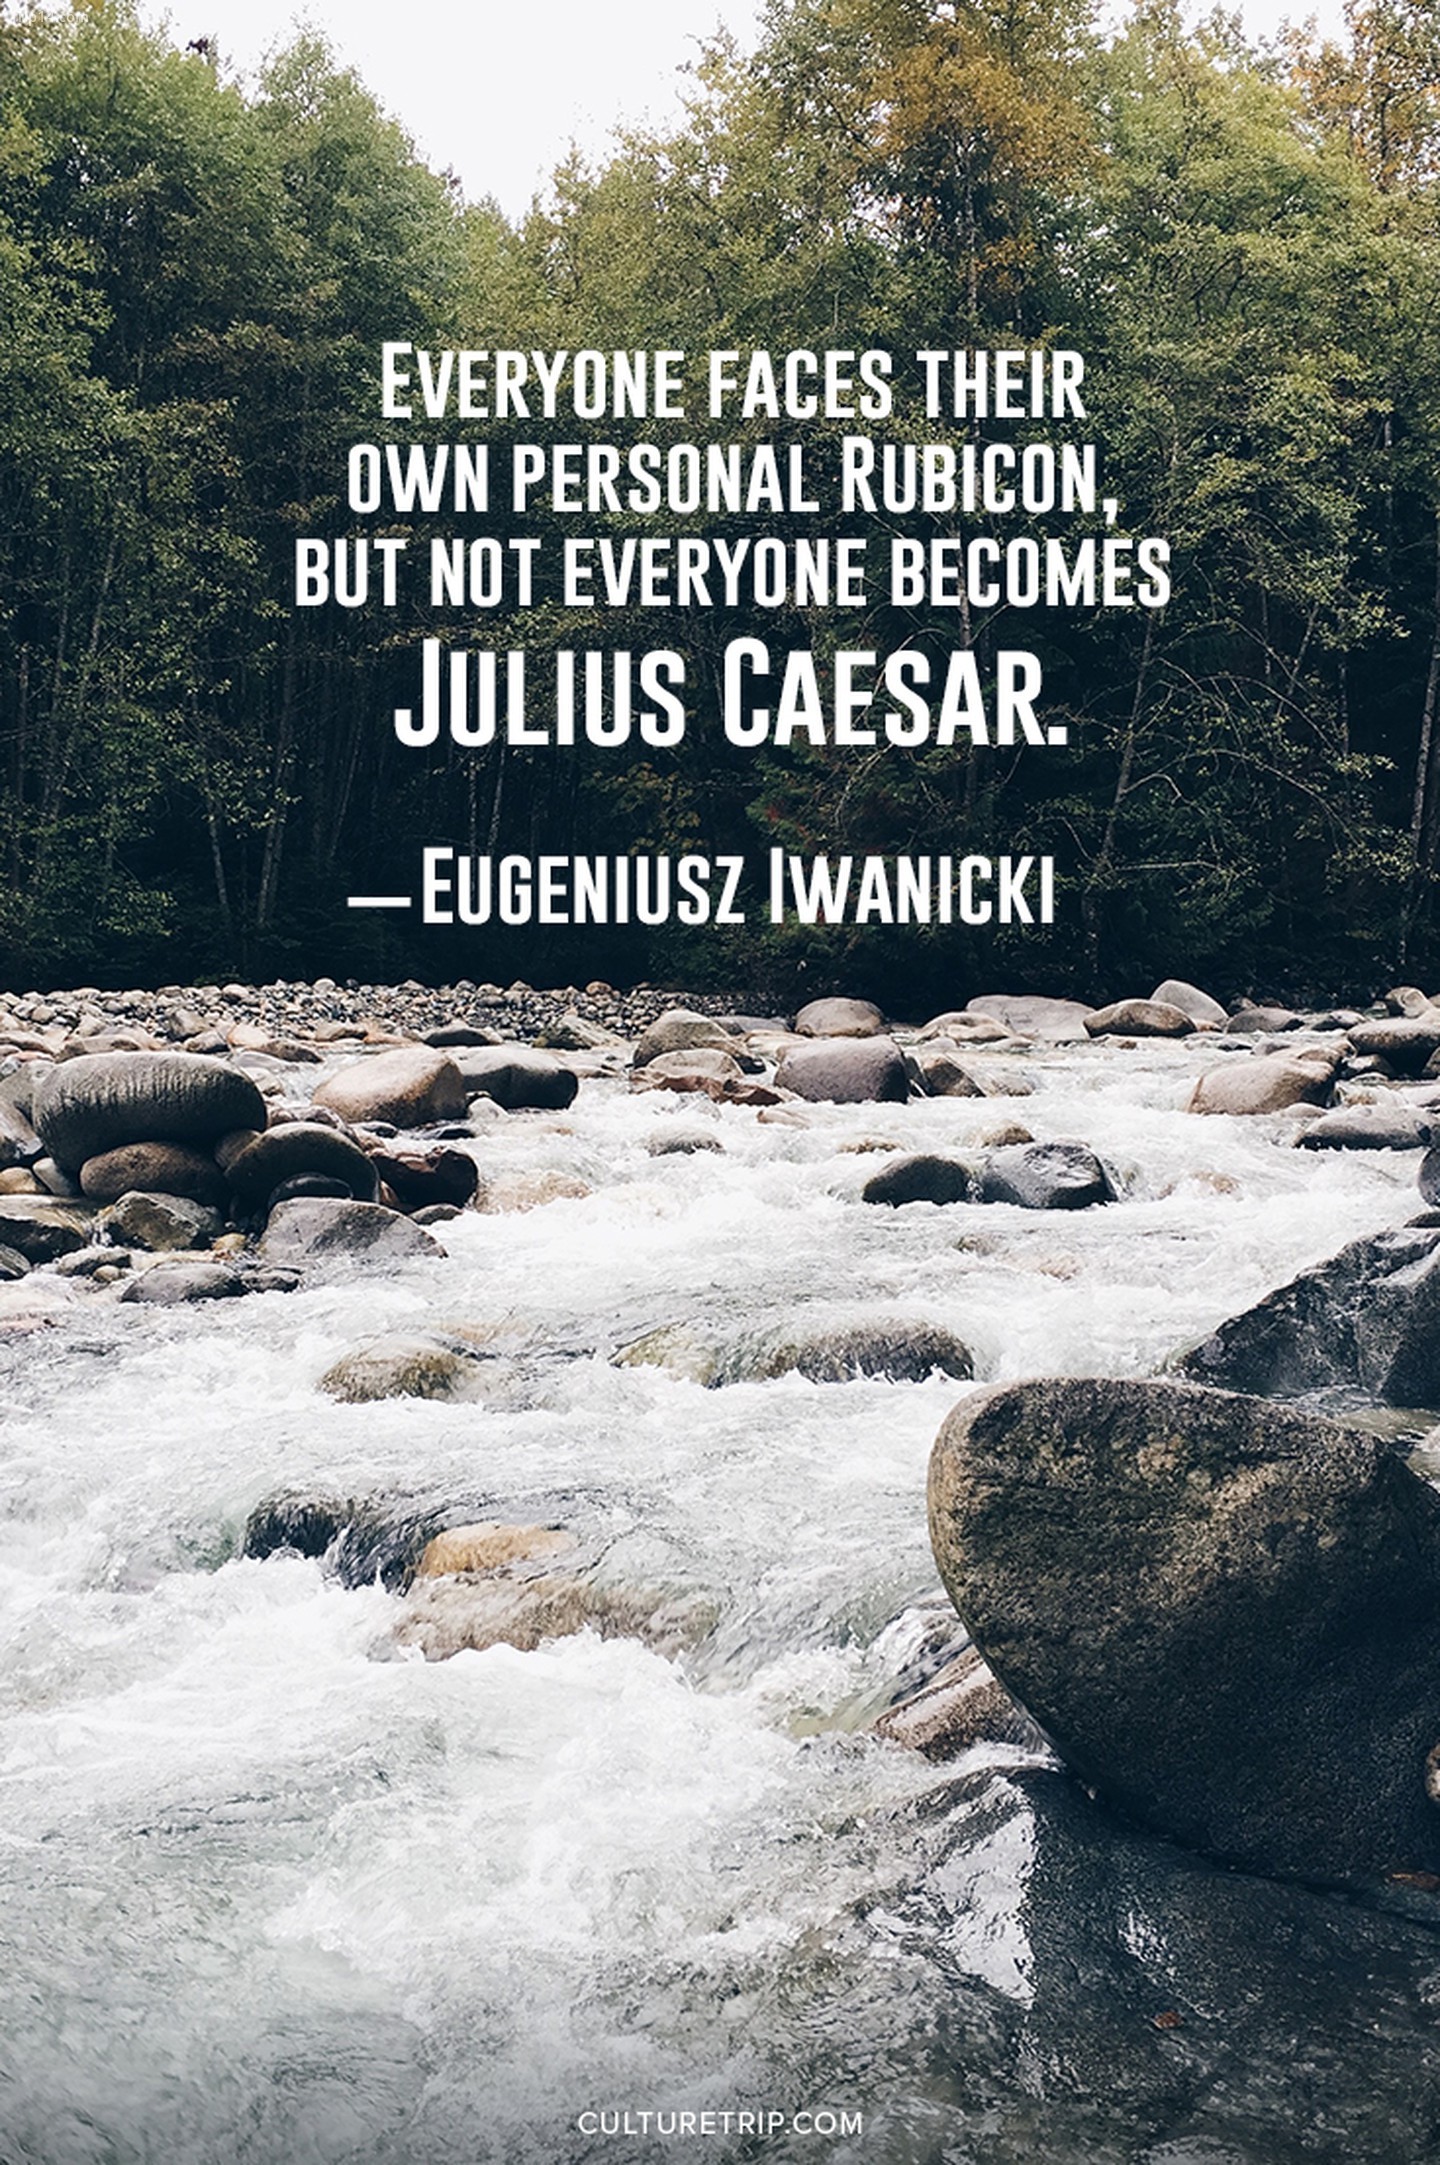 Mọi người đều phải đối mặt với Rubicon của riêng mình, nhưng không phải ai cũng trở thành Julius Caesar.